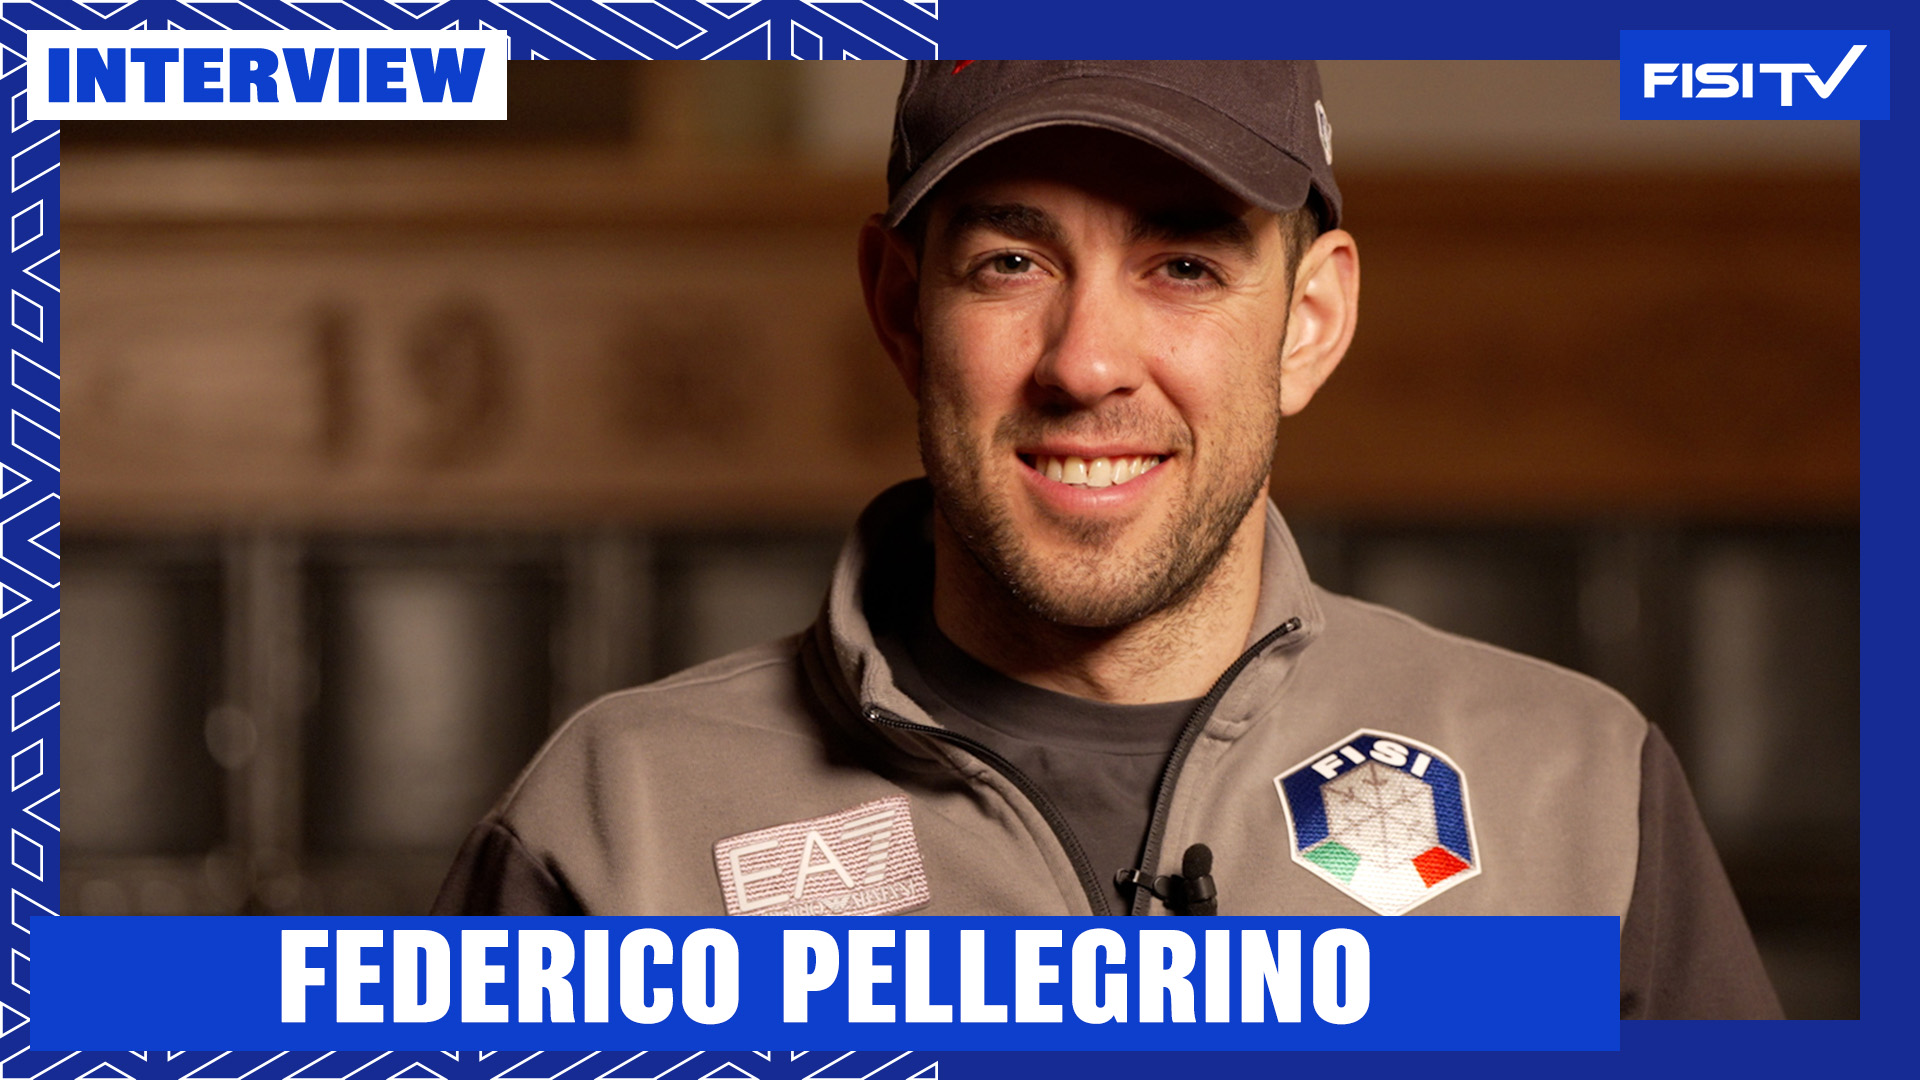 Federico Pellegrino | “Come il mio corpo e la mia testa stanno cambiando” | FISI TV